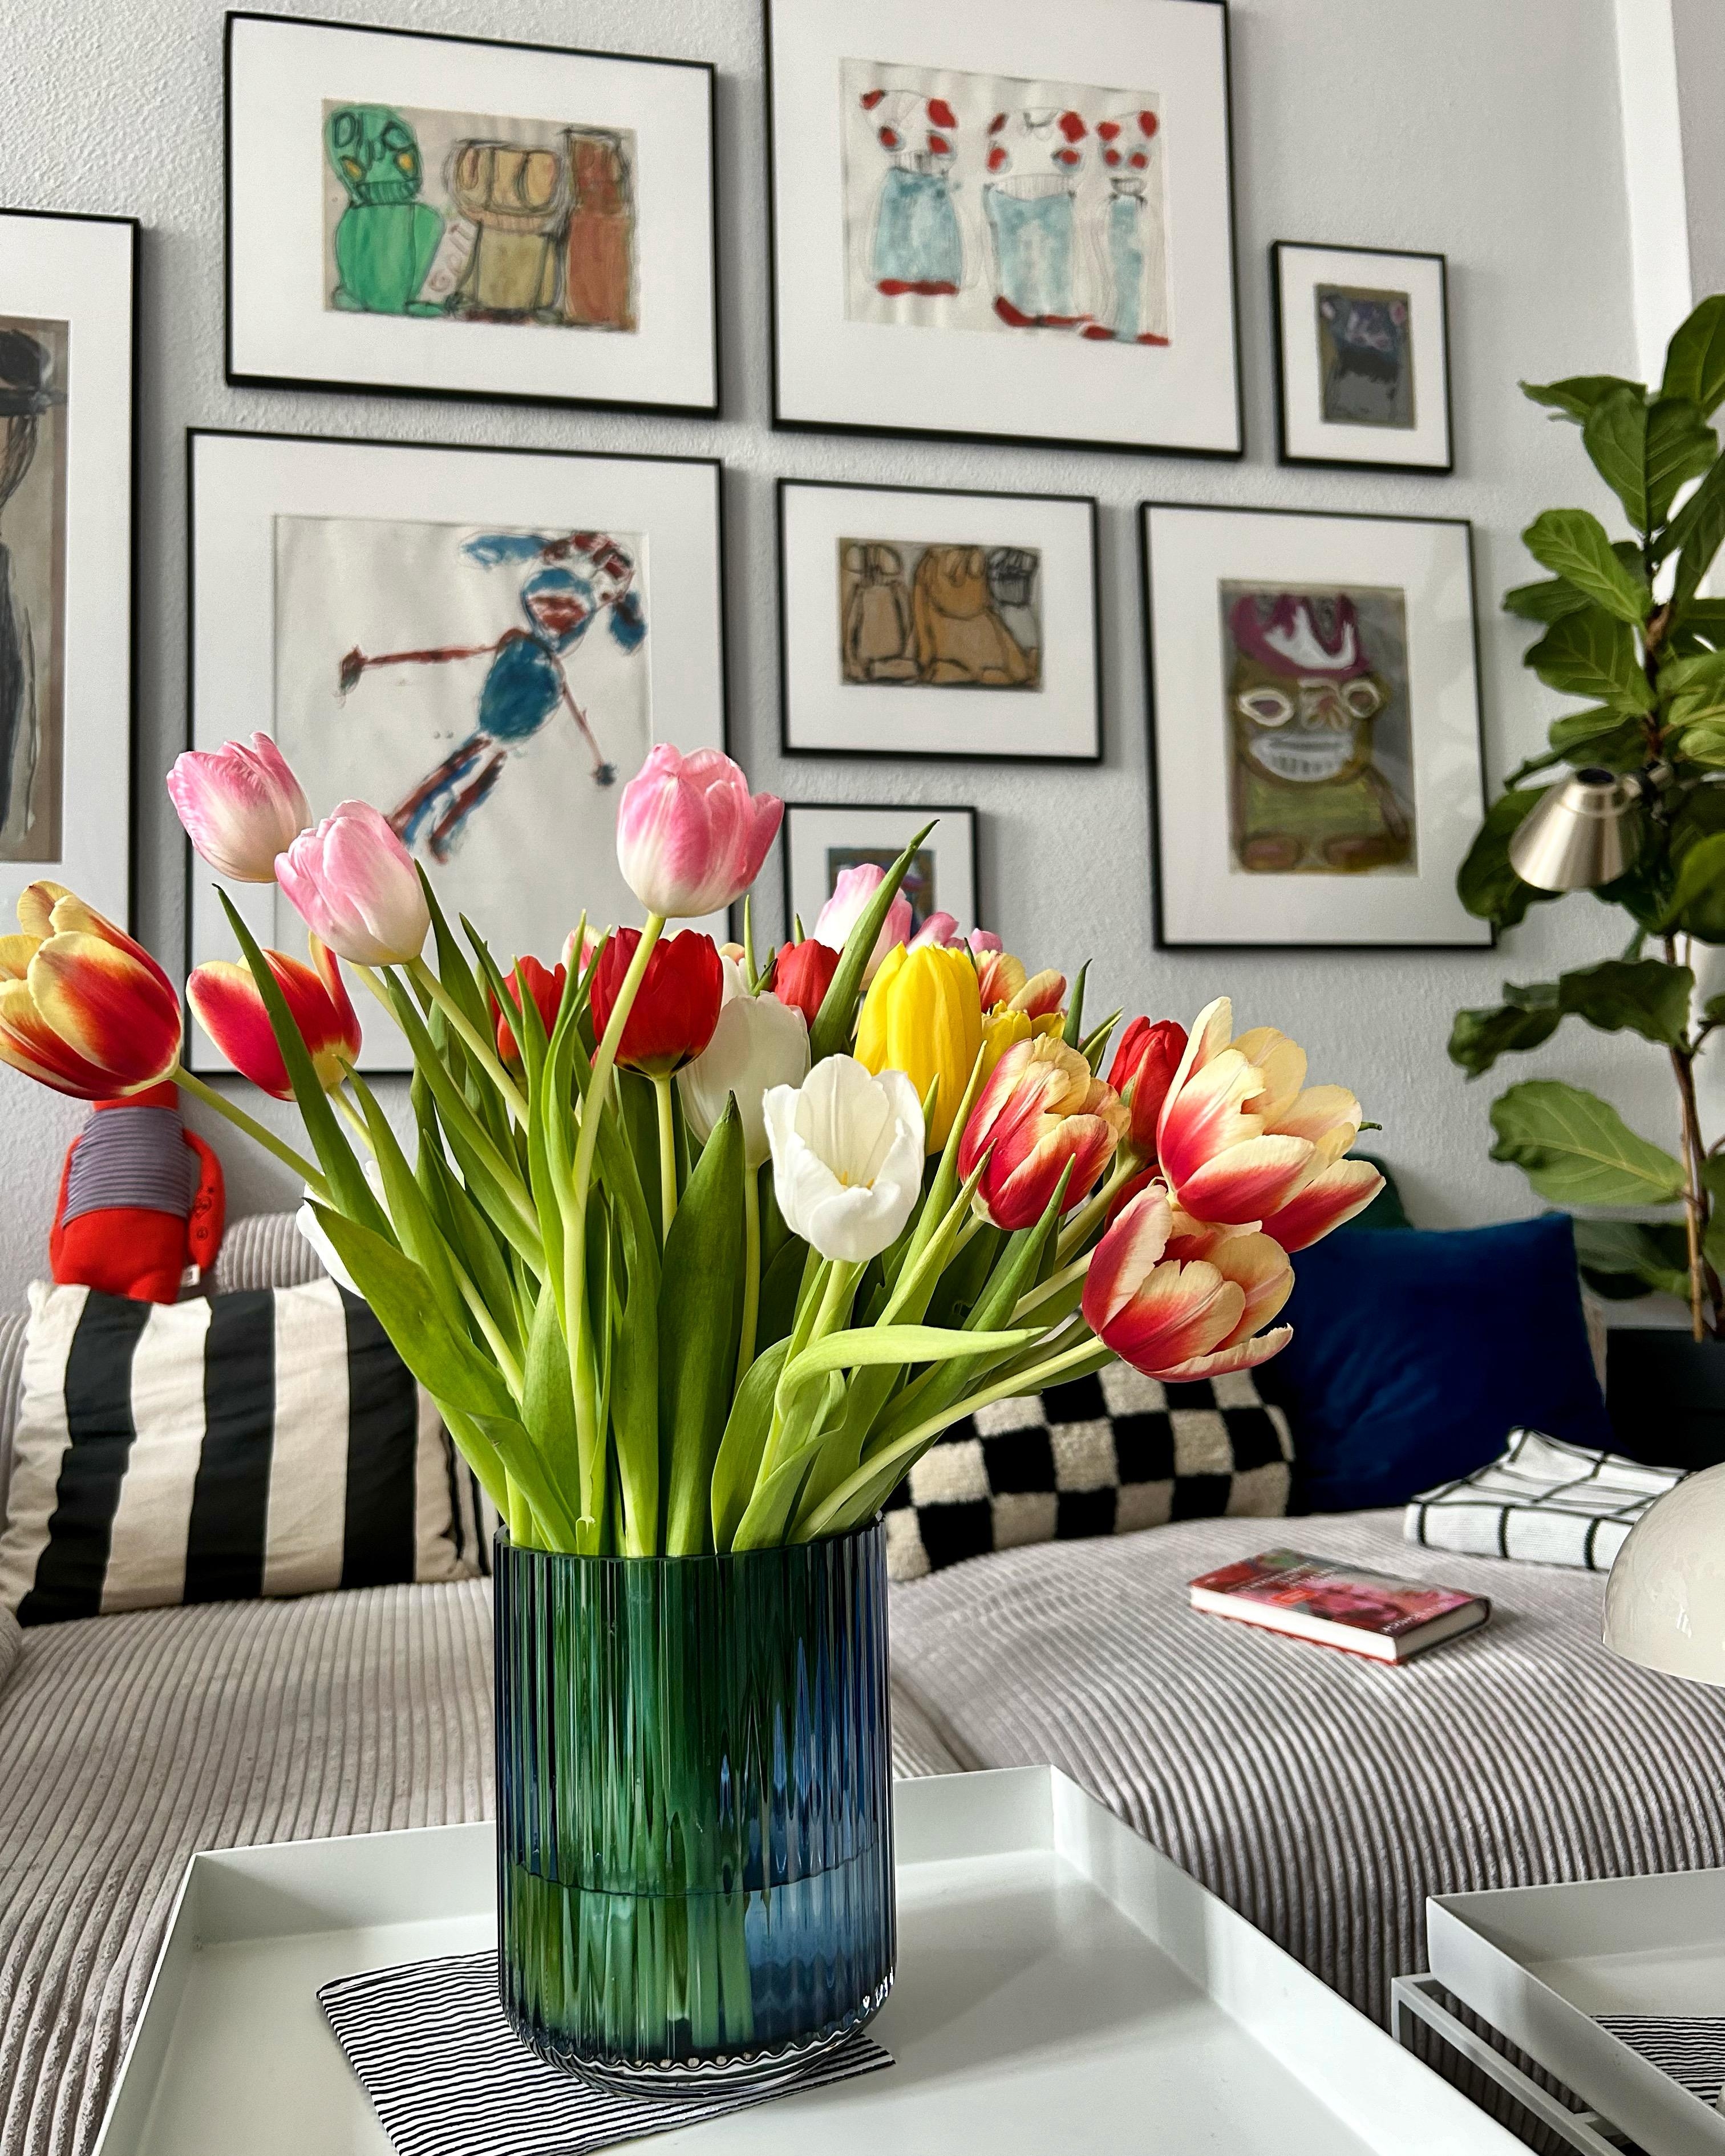 #tulpen #lyngby #bildergalerie #kunst #vetsaksofa #wohnzimmer #altbauwohnung
Tulpeninvasion. Der Frühling kommt. 